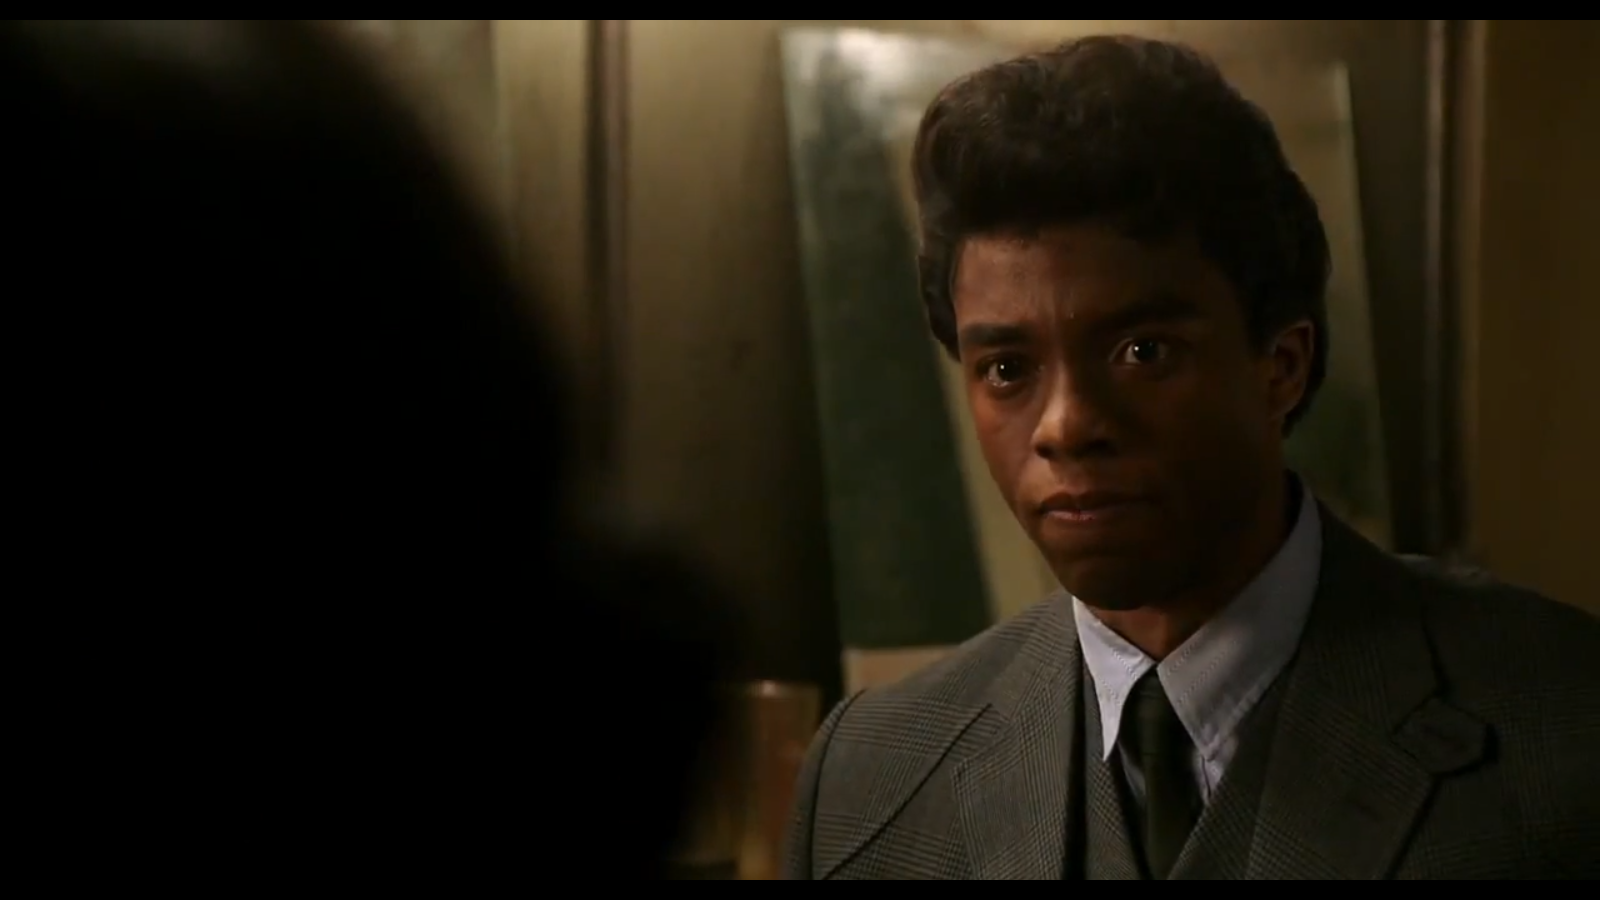 Boseman as Brown